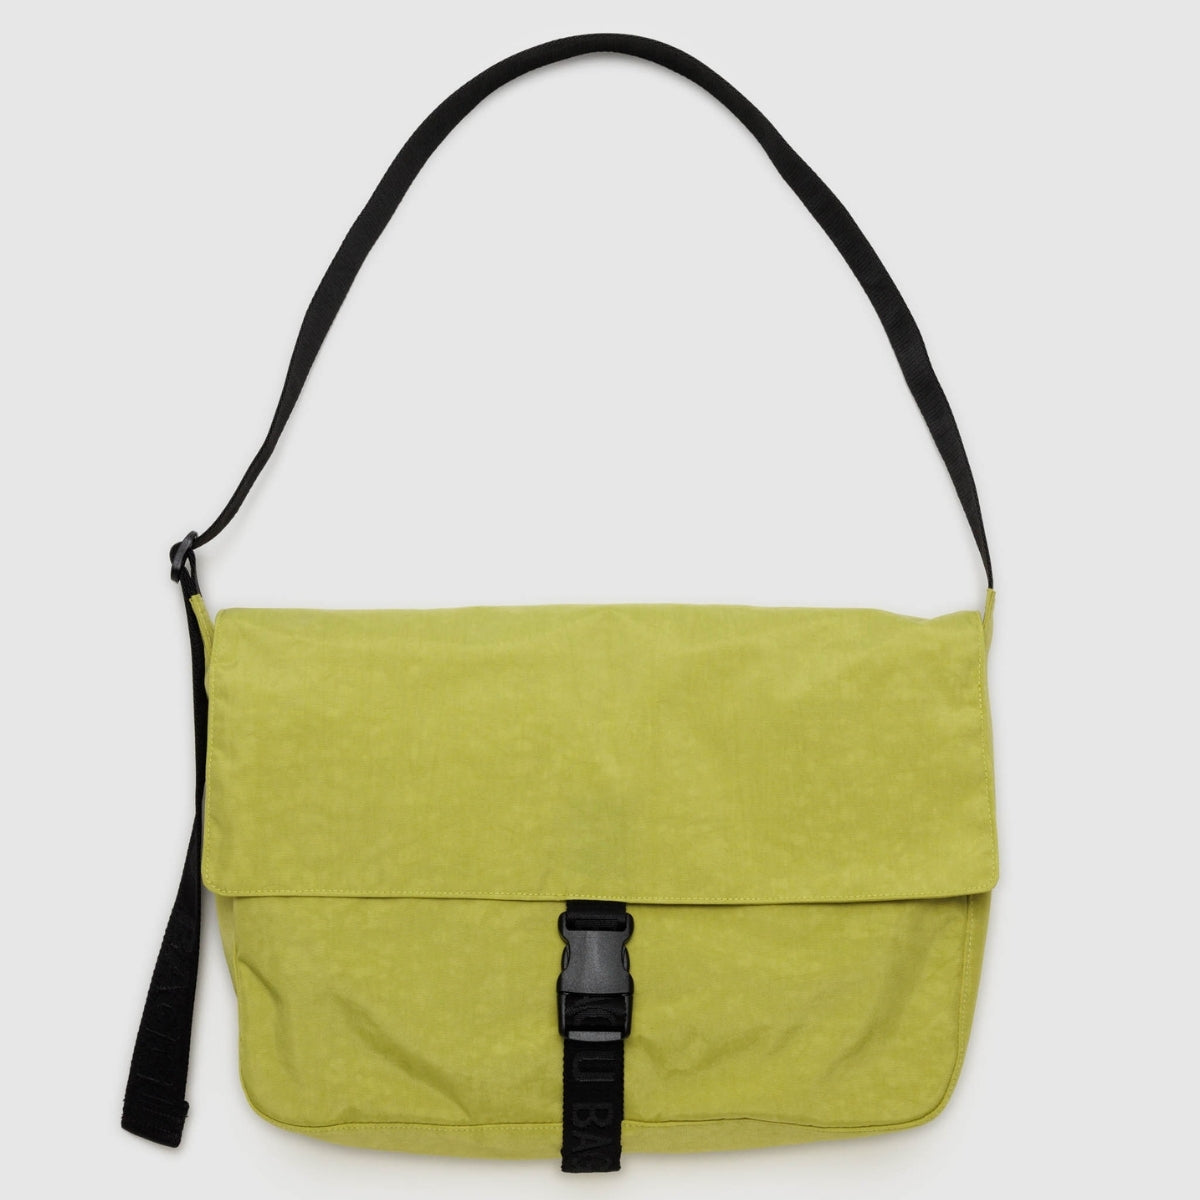 Baggu Nylon Messenger Bag in Lemongrass